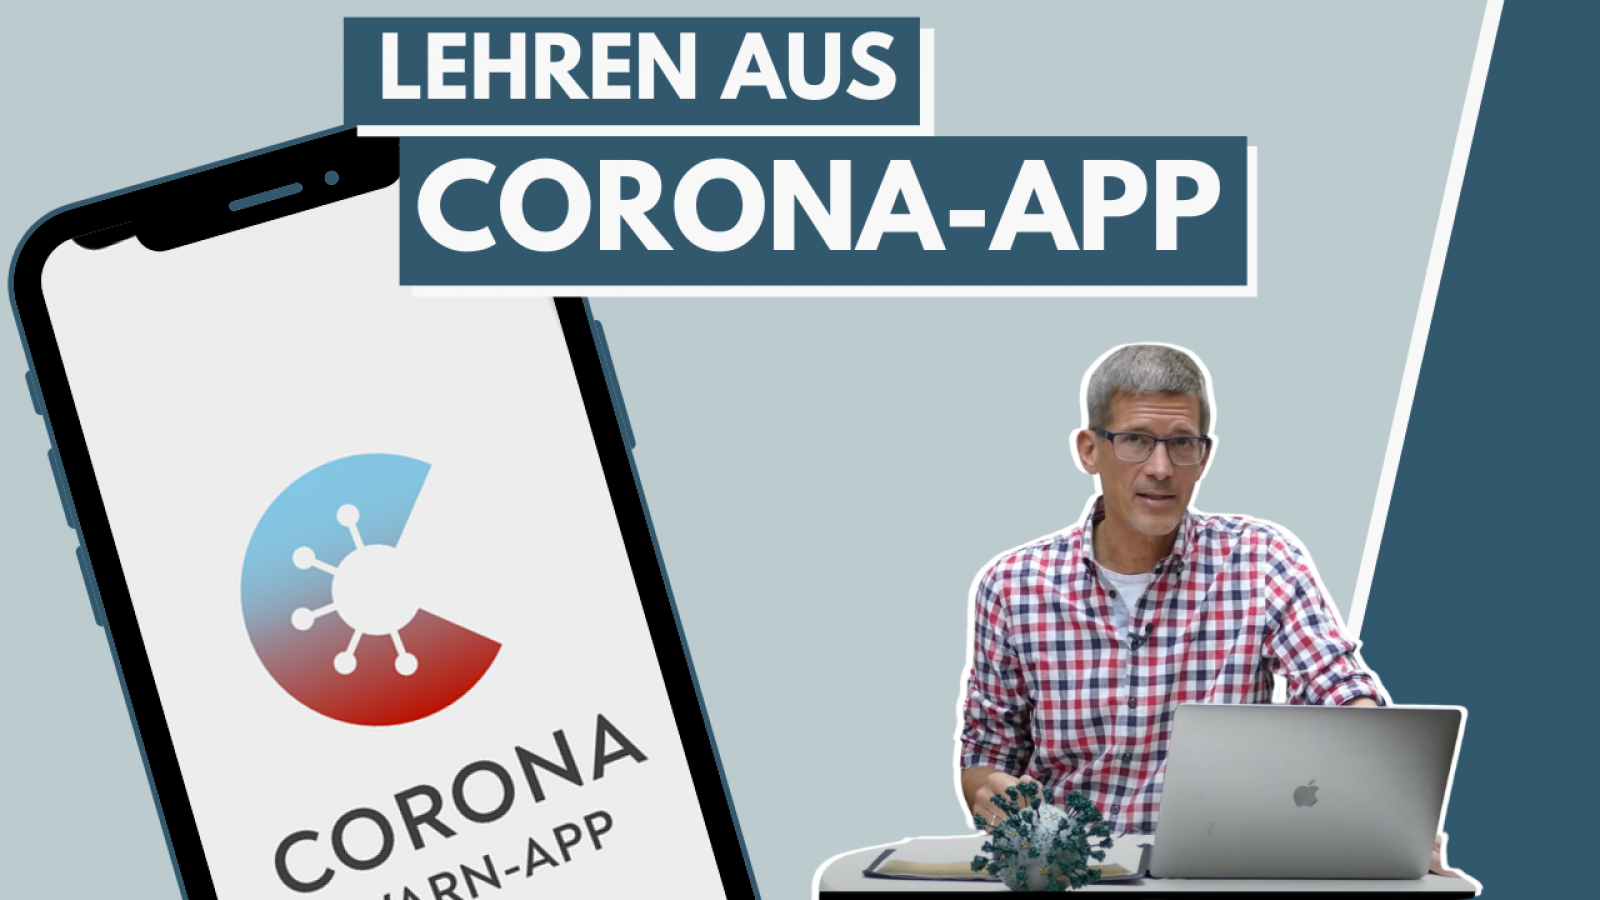 Lehren aus der Corona-App